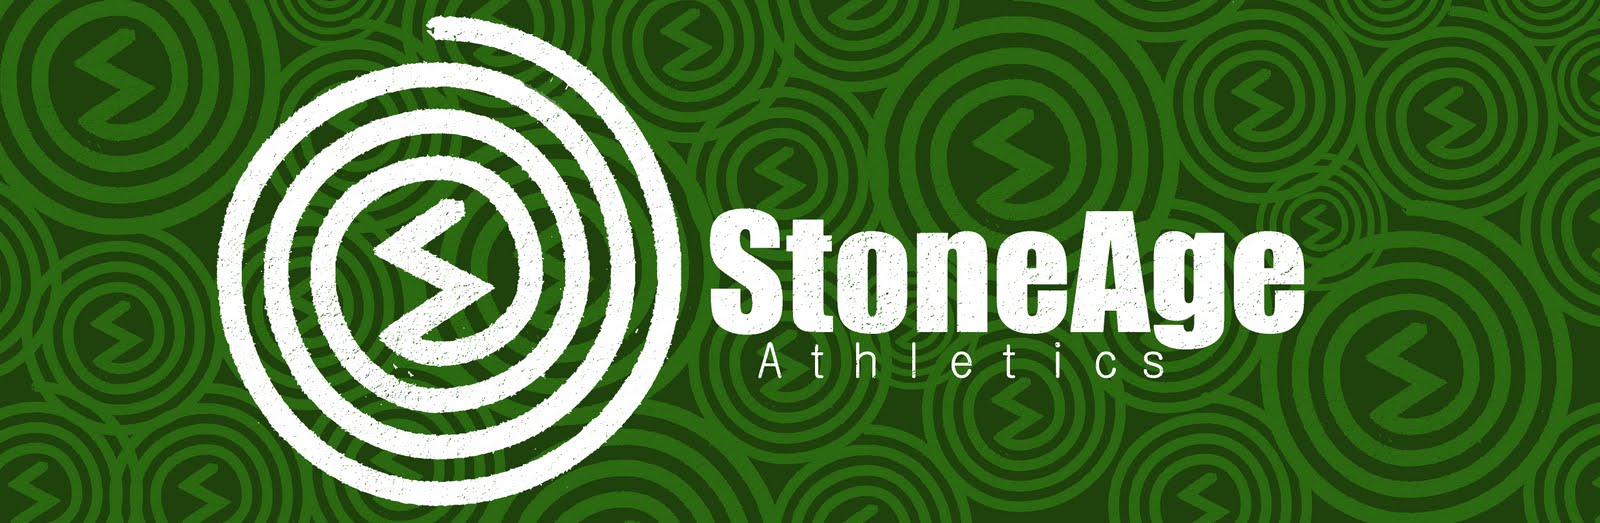 StoneAge Athletics